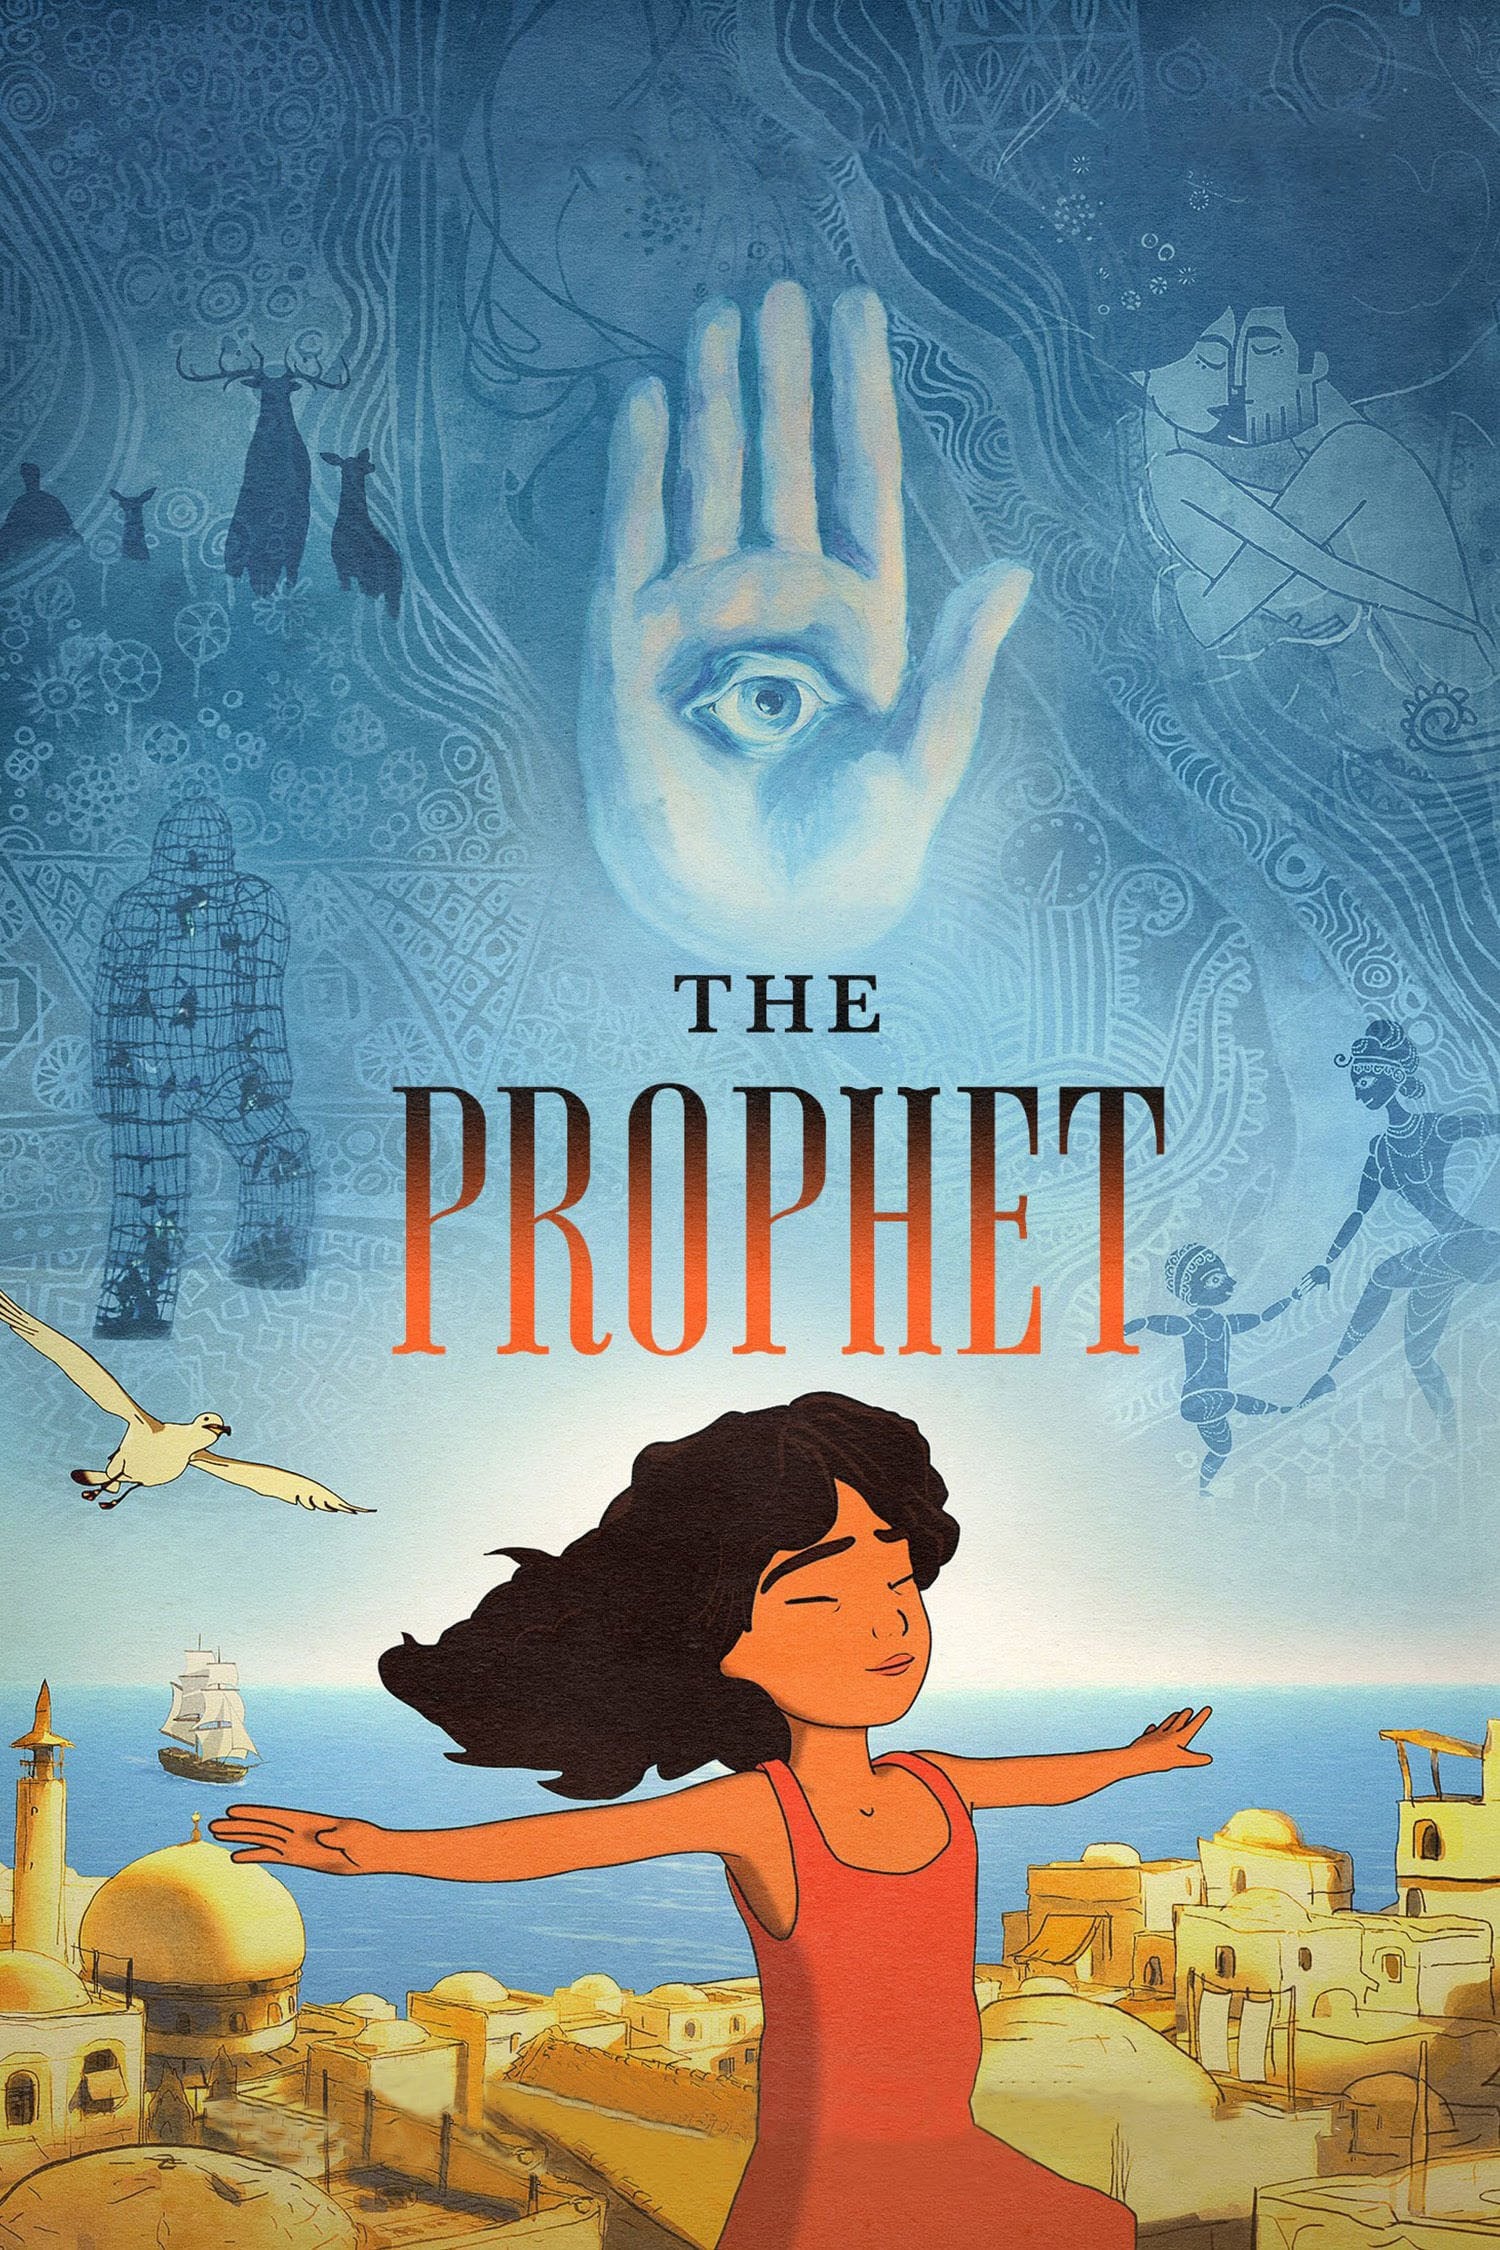 Kahlil Gibran's The Prophet film